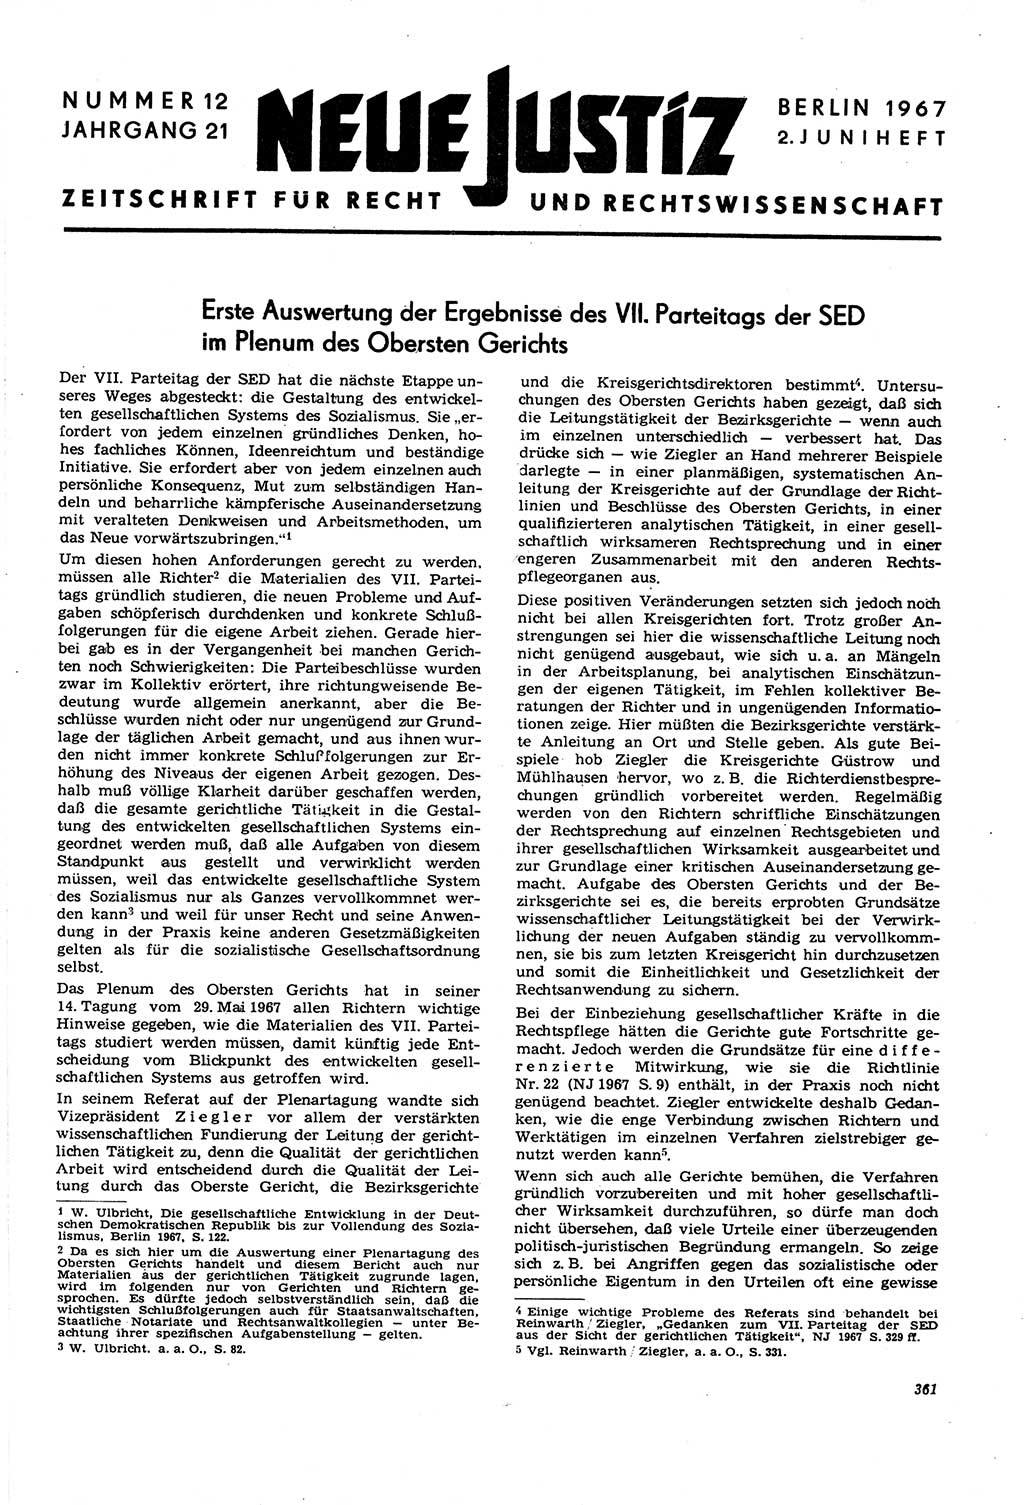 Neue Justiz (NJ), Zeitschrift für Recht und Rechtswissenschaft [Deutsche Demokratische Republik (DDR)], 21. Jahrgang 1967, Seite 361 (NJ DDR 1967, S. 361)